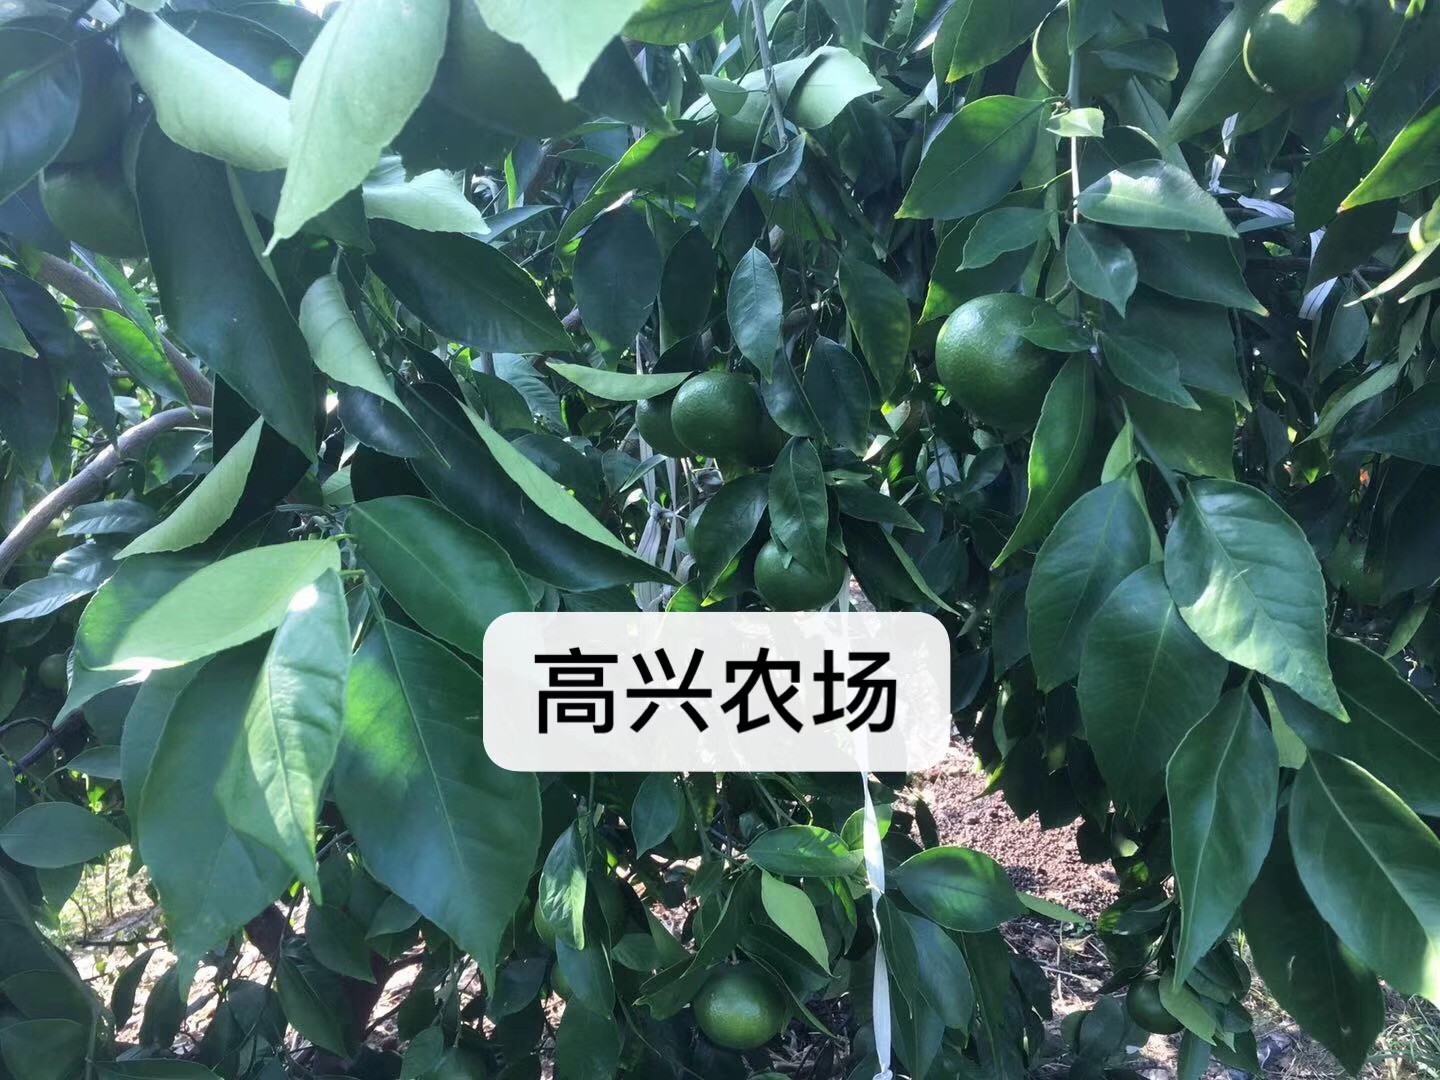 宁波市优质黄美人柑橘苗 象黄美人枝条厂家